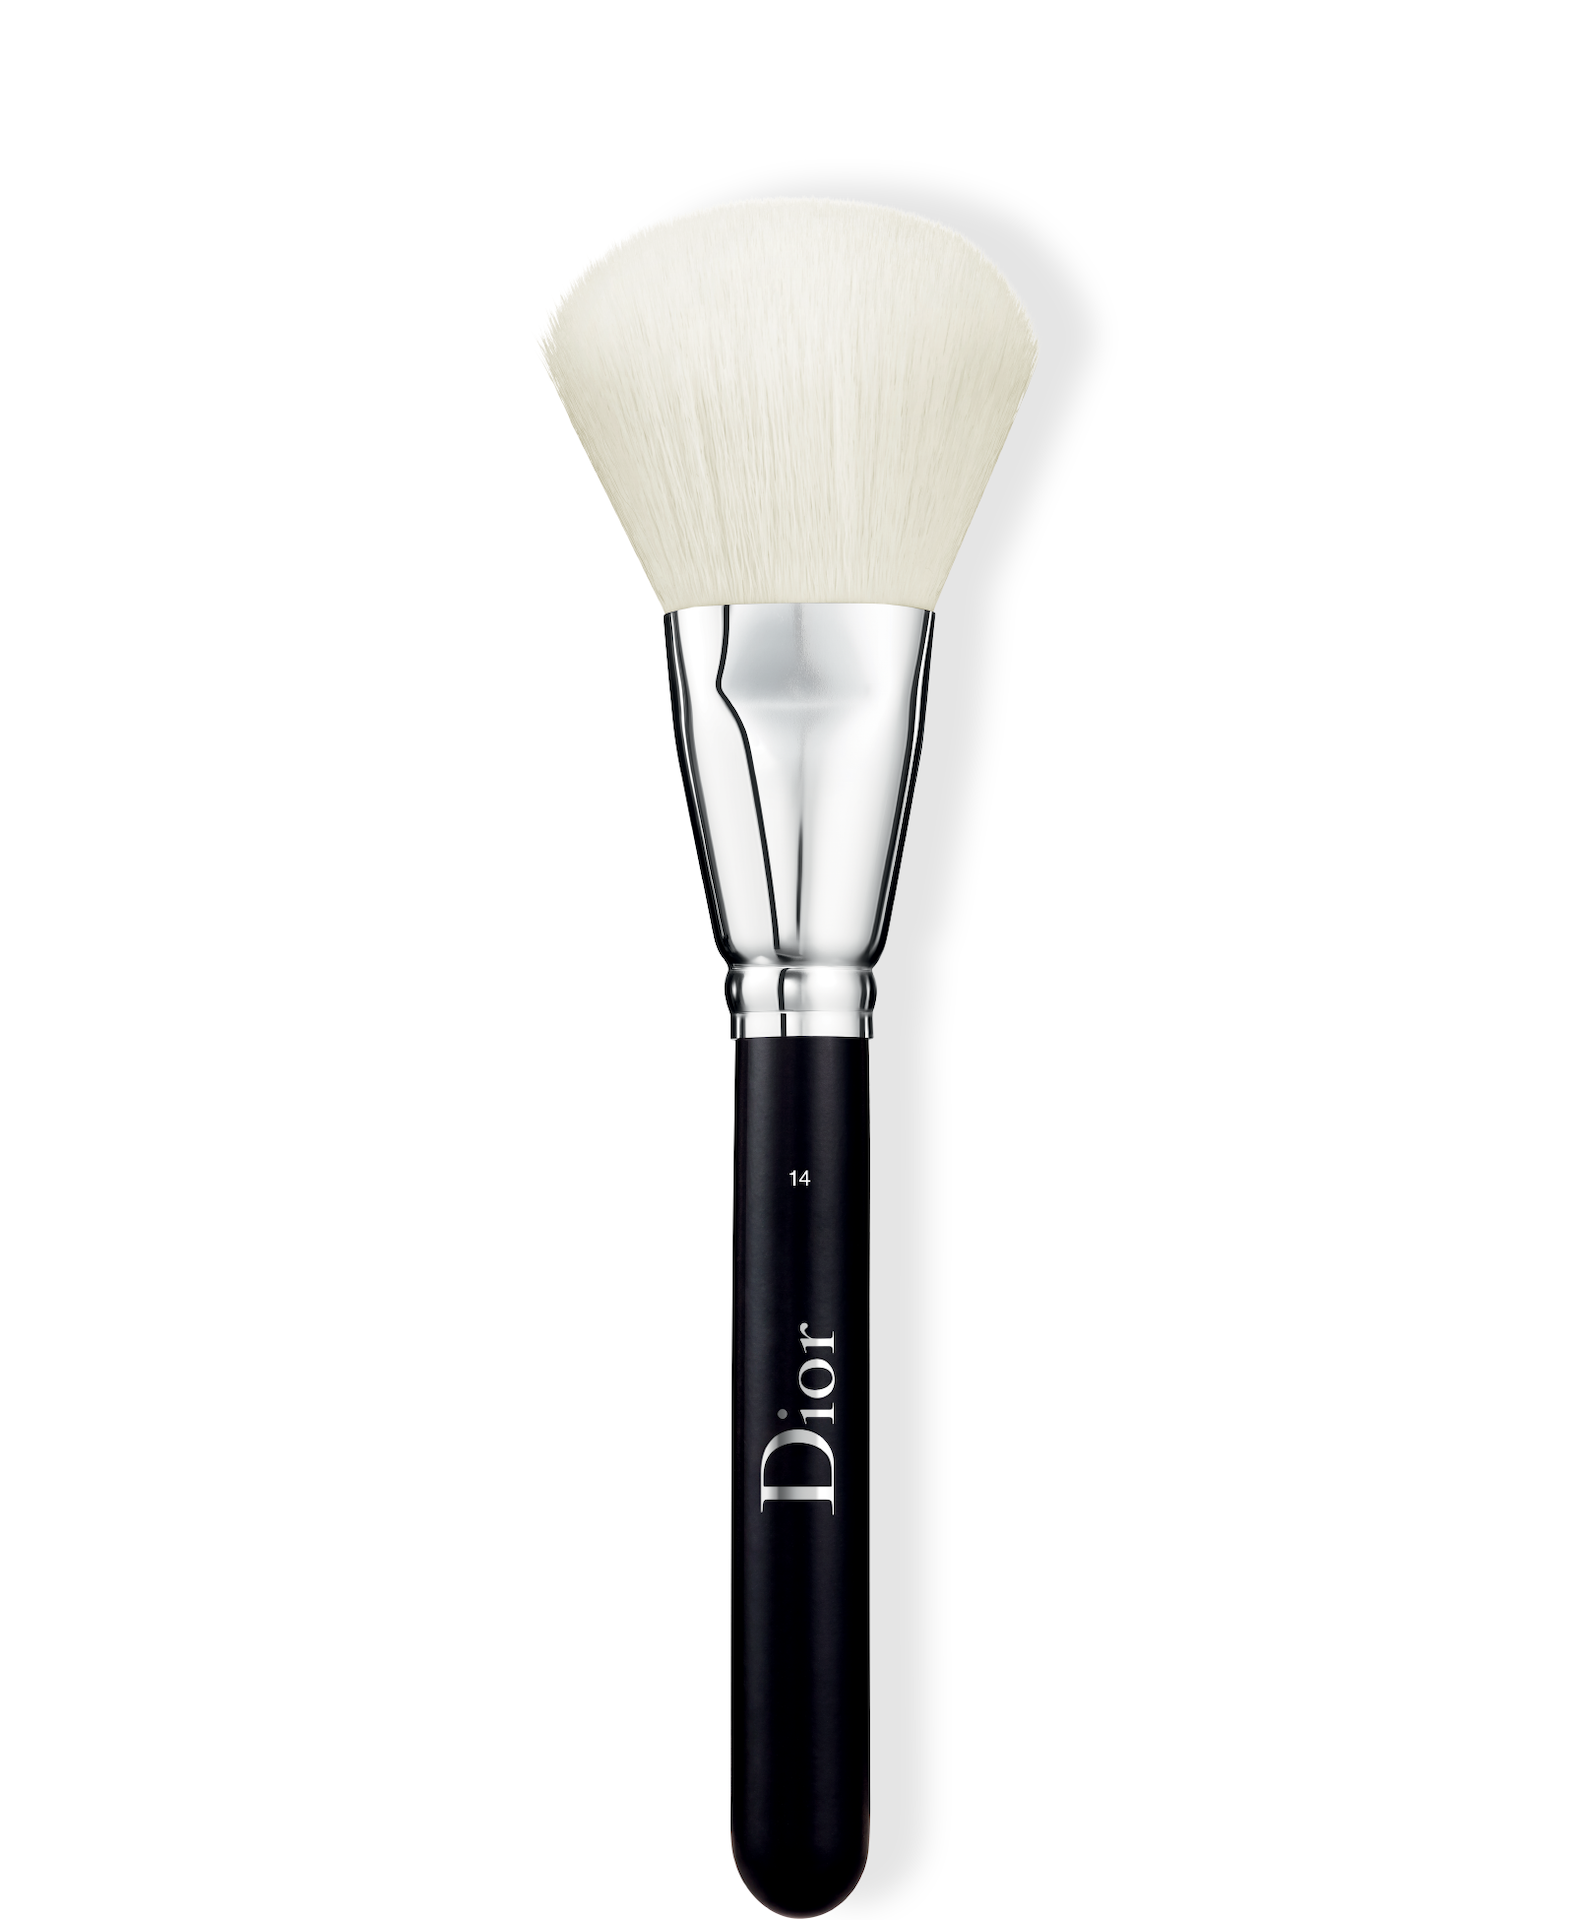 Christian Dior Backstage Powder Brush N°14